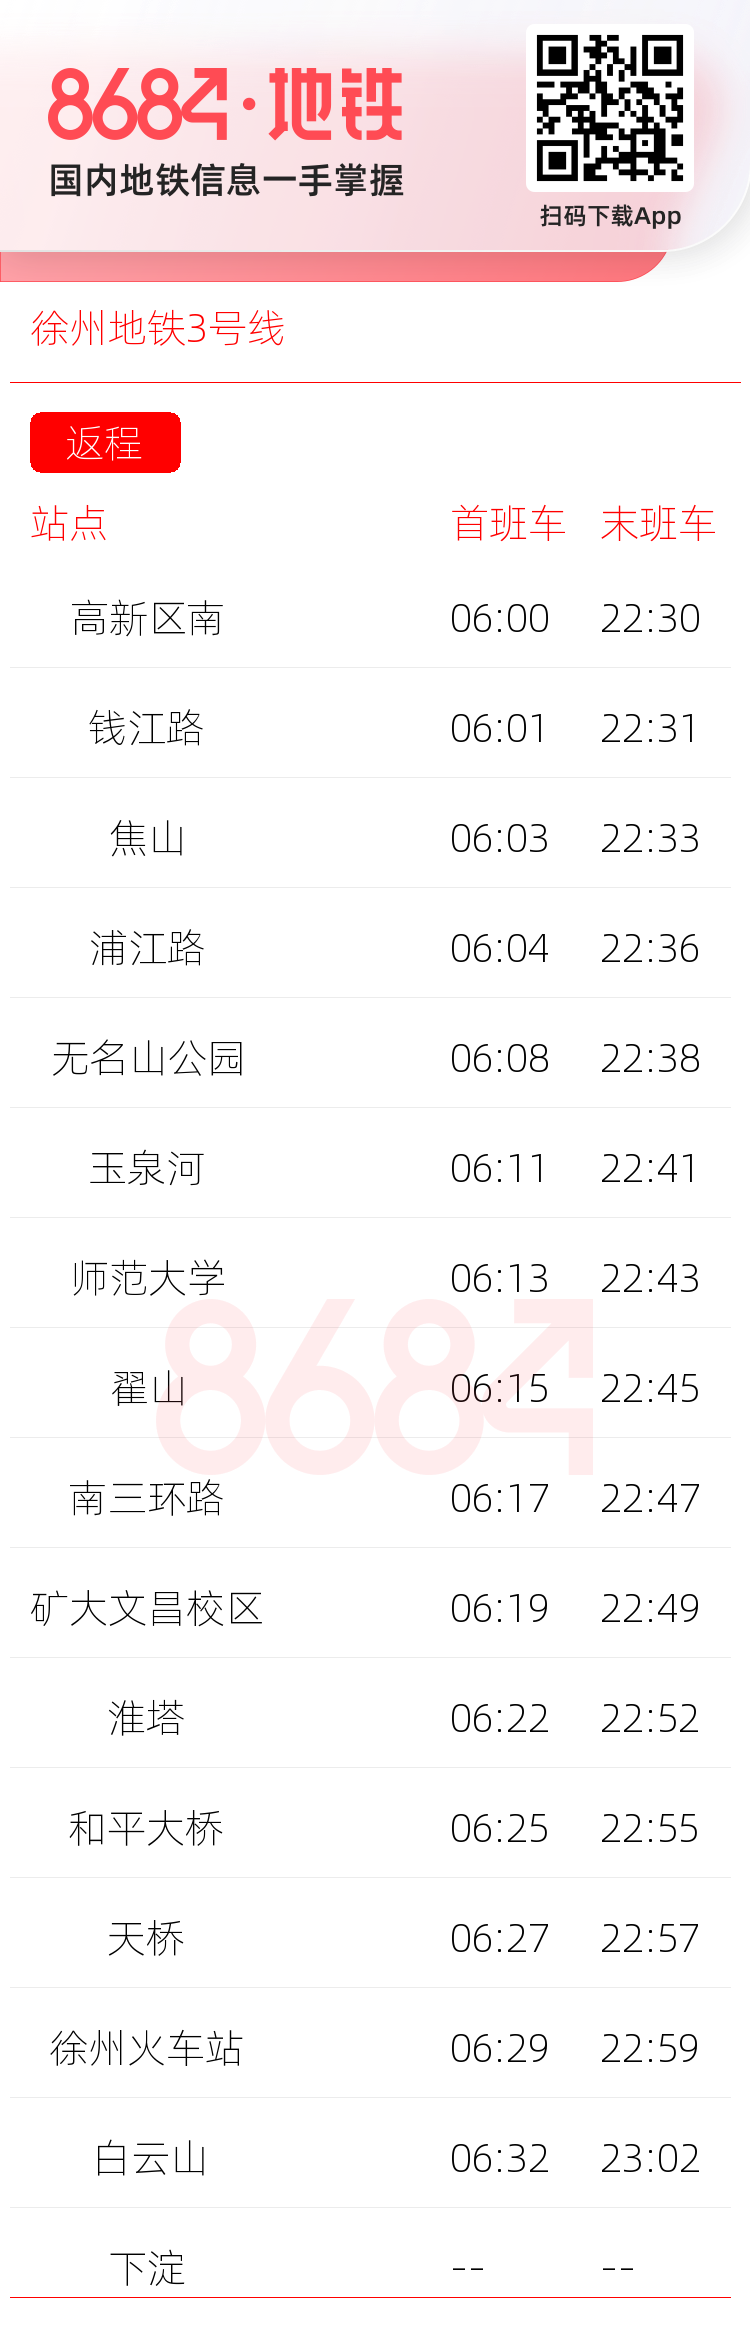 徐州地铁3号线运营时间表